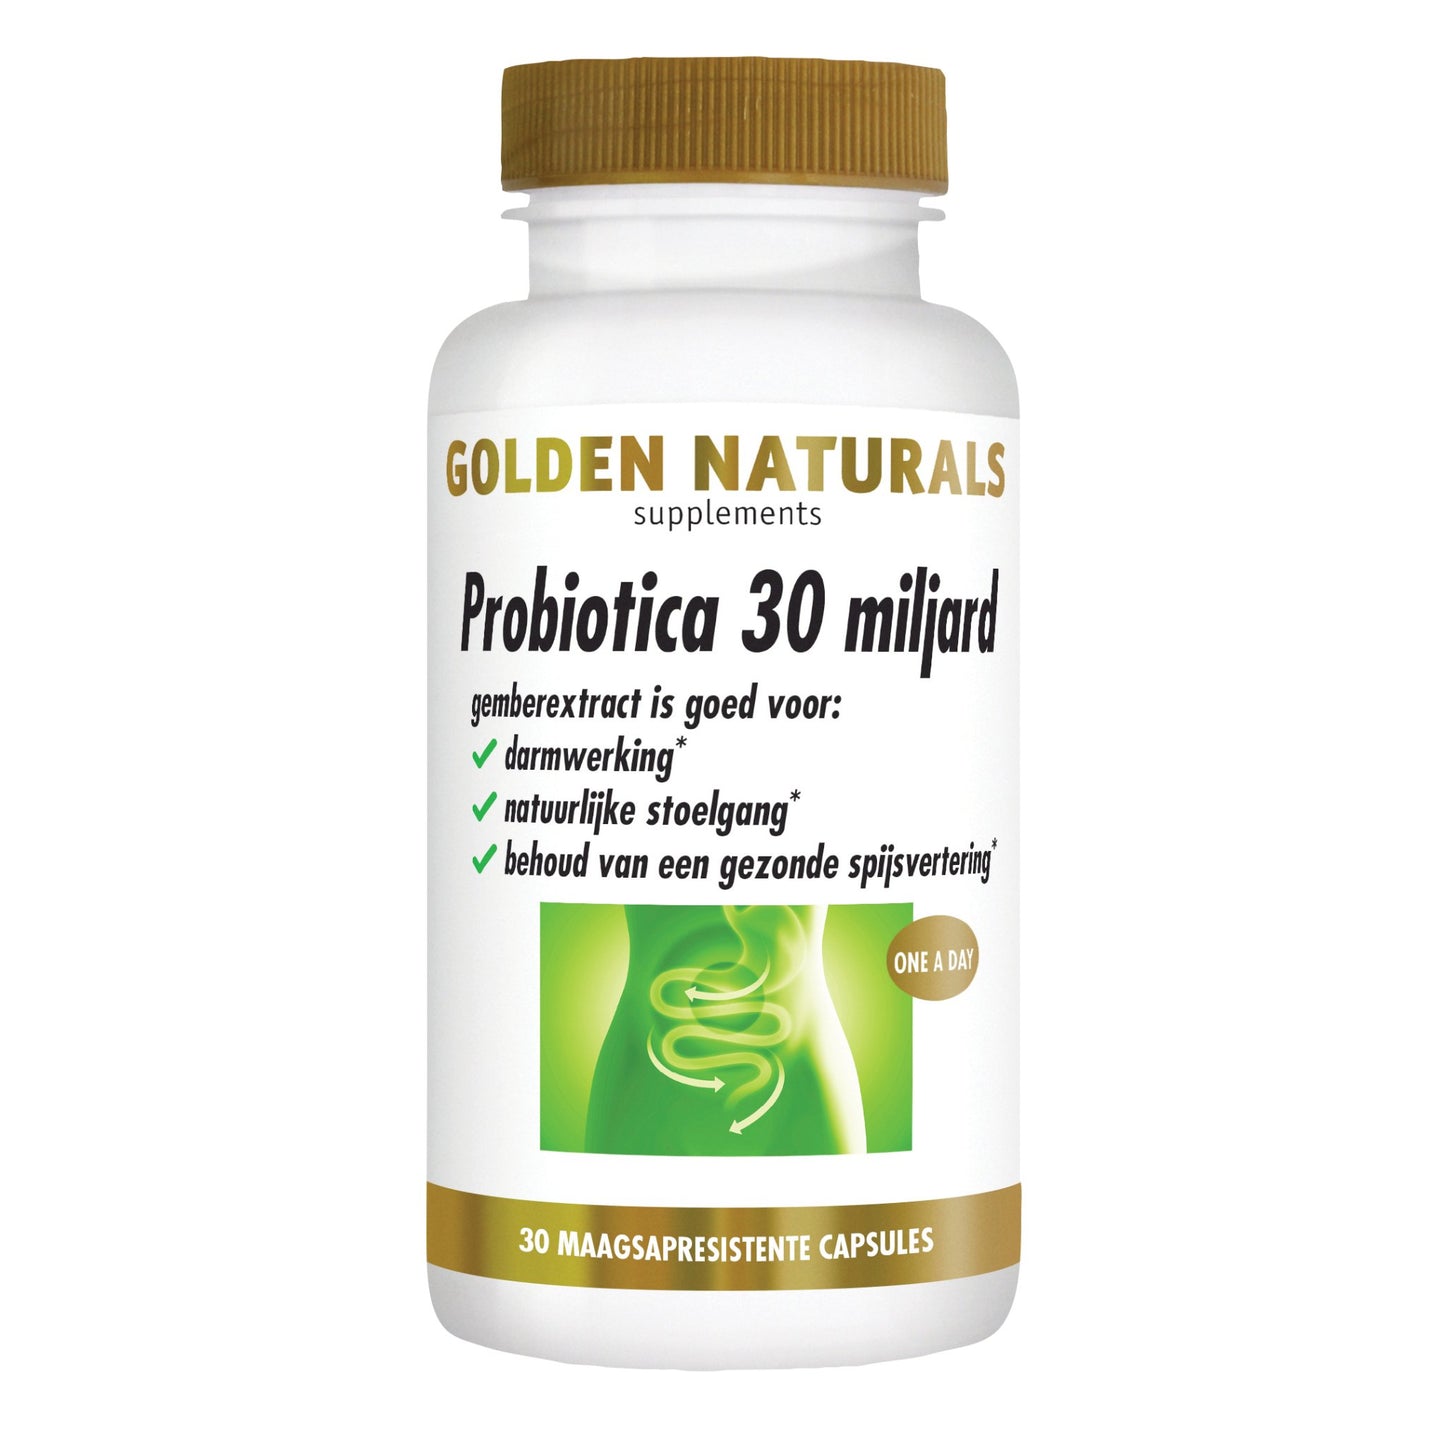 Probiotica 30 miljard - 30 - veganistische maagsapresistente capsules Supplement Golden Naturals   